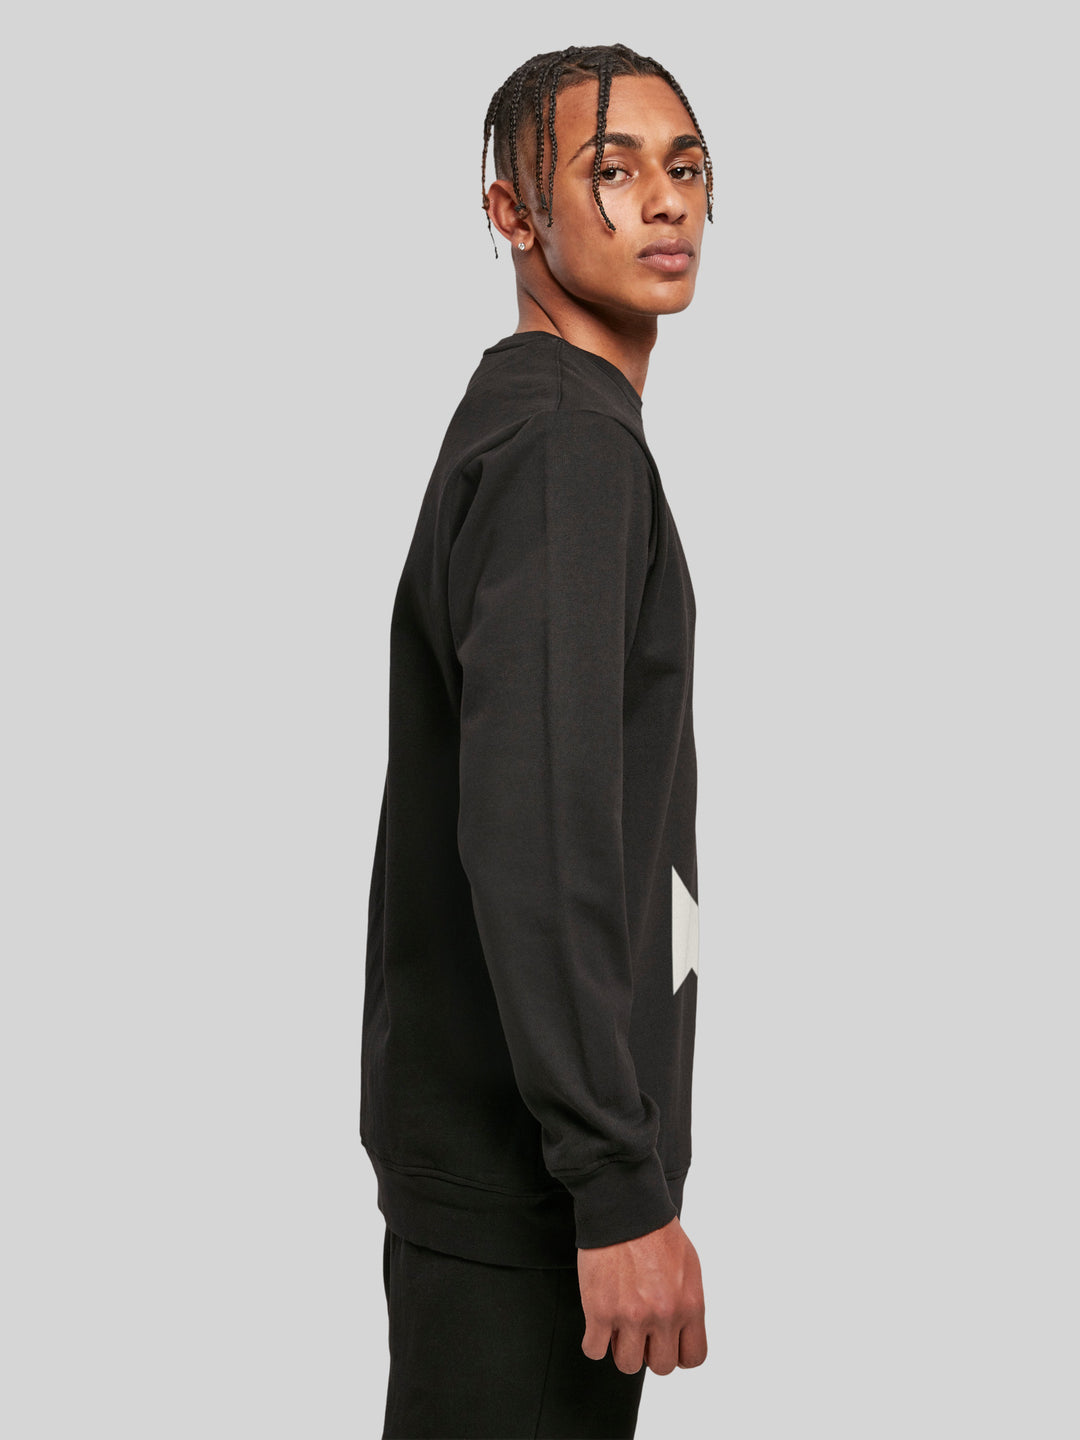 PIET | Sweatshirt Pullover Herren Ahoi Anker Crop